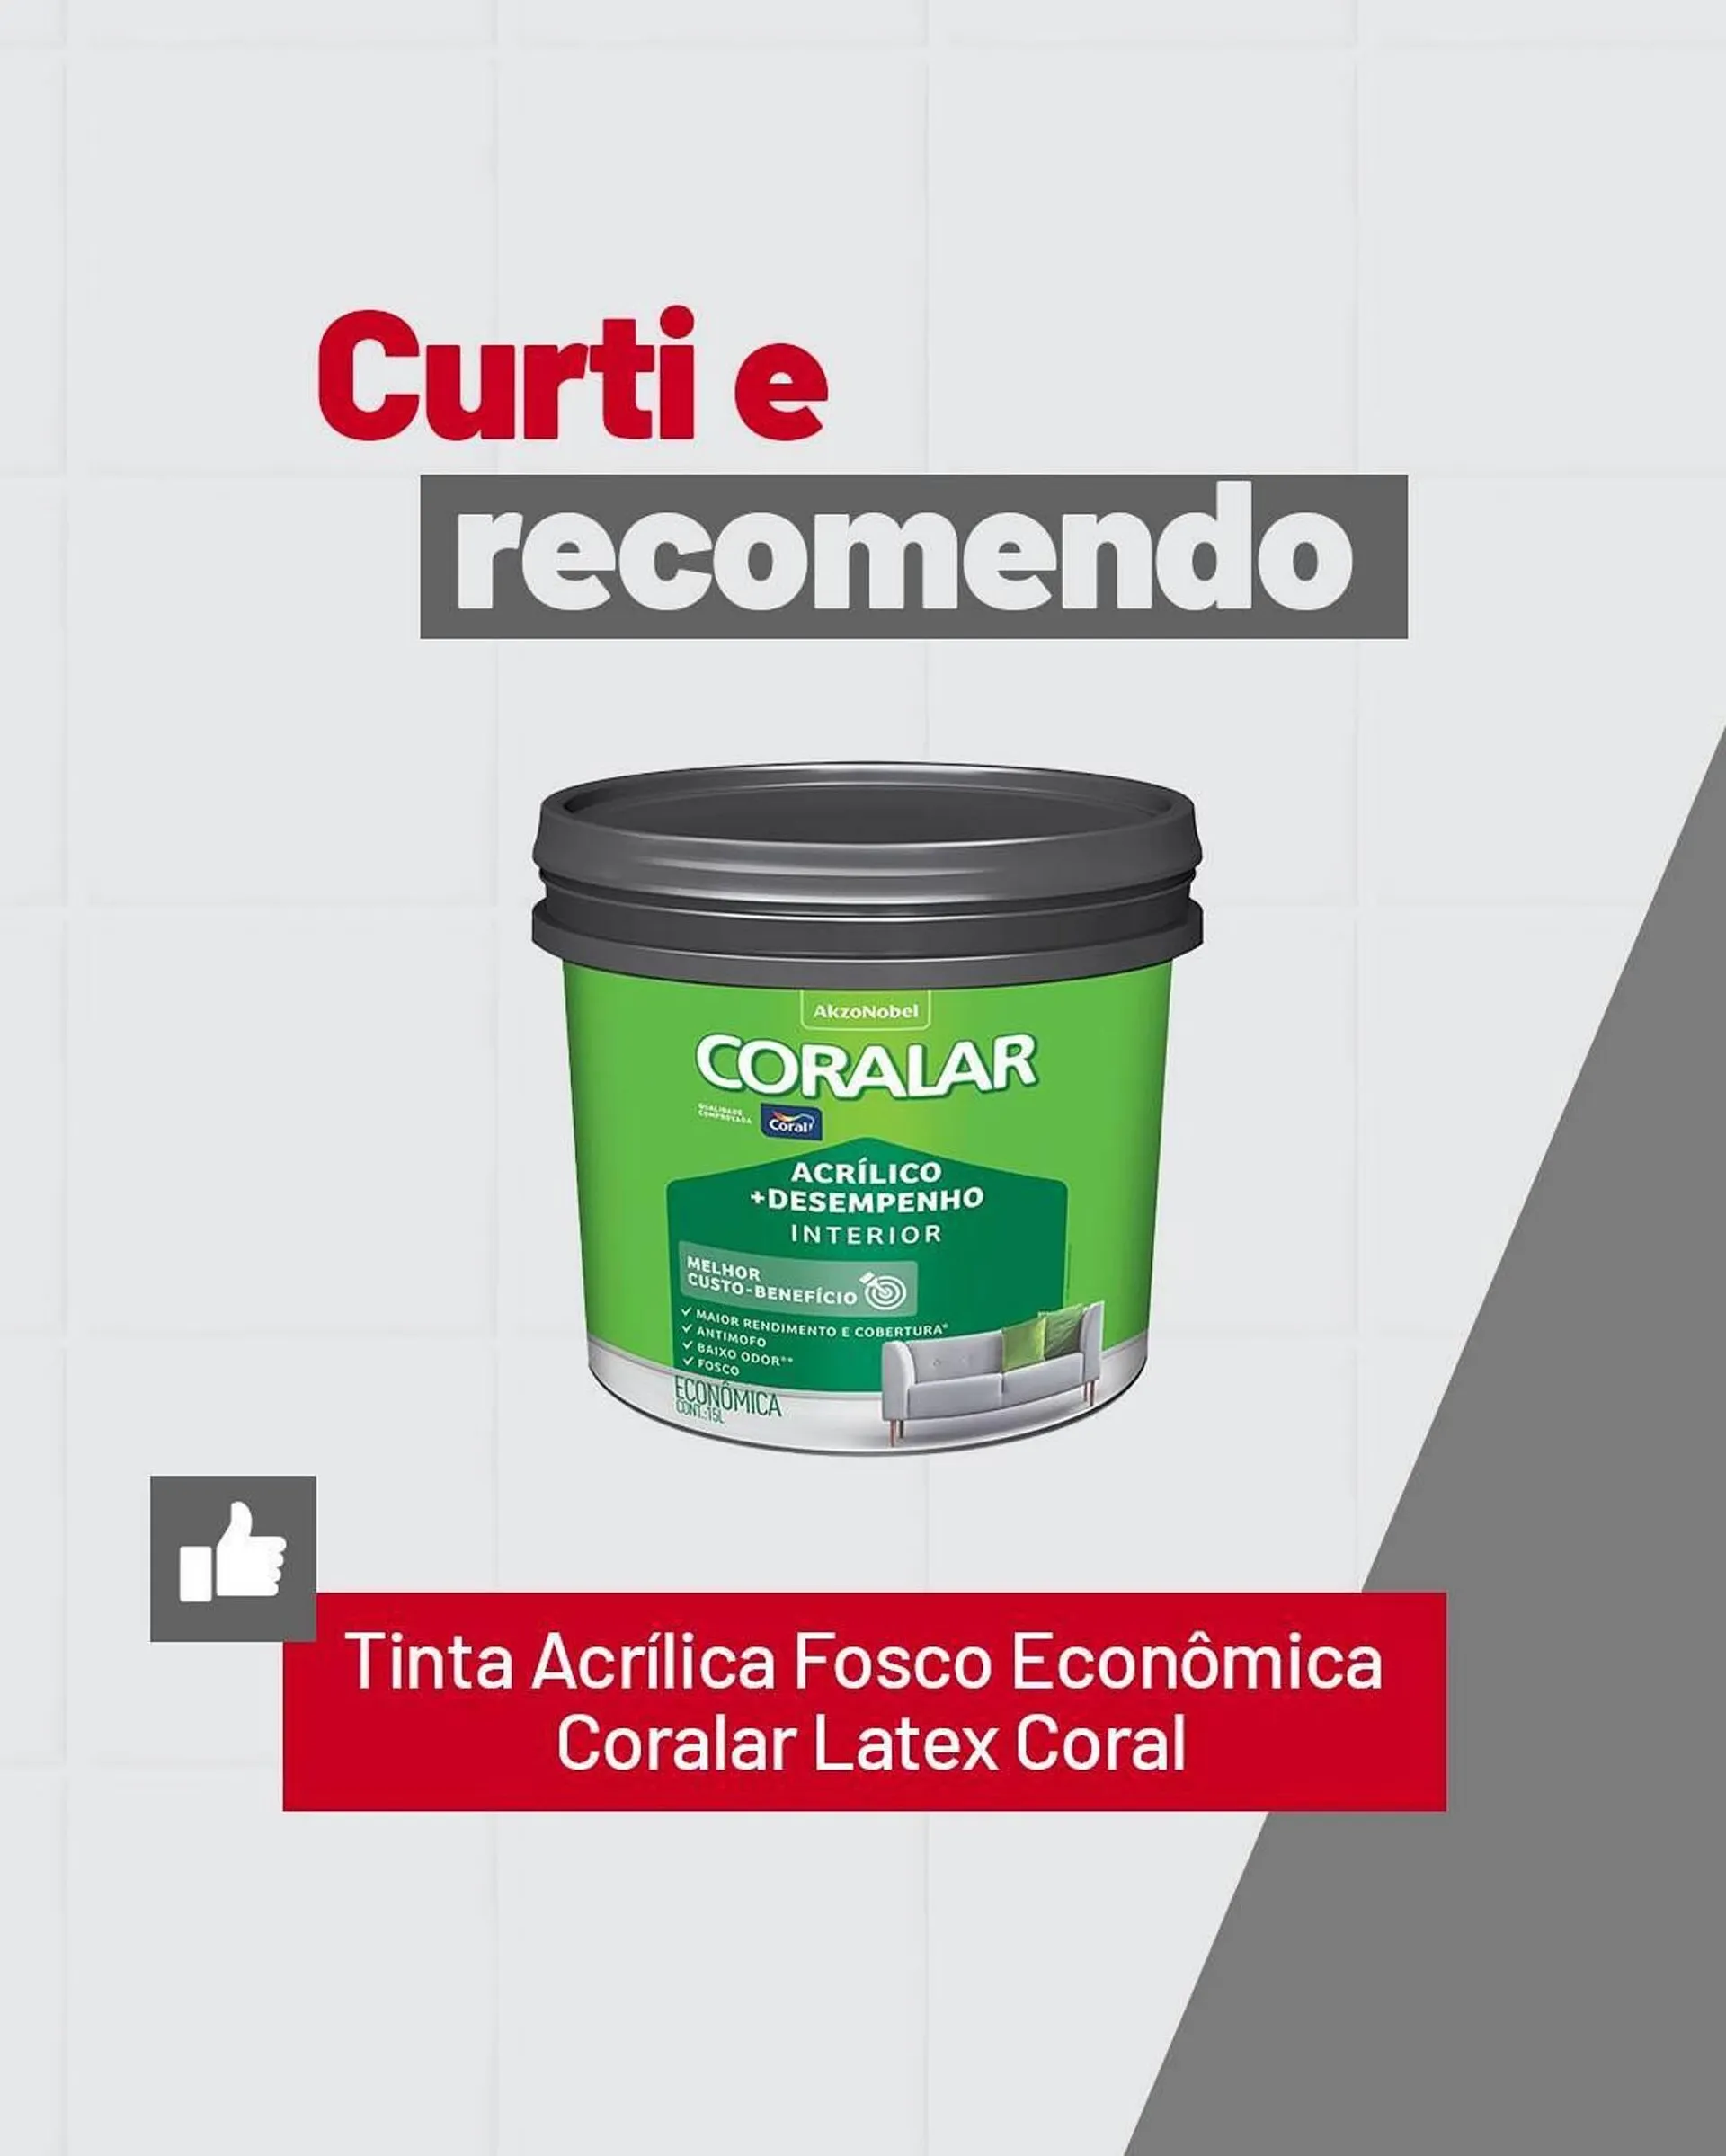 Catálogo Ferreira Costa - 1